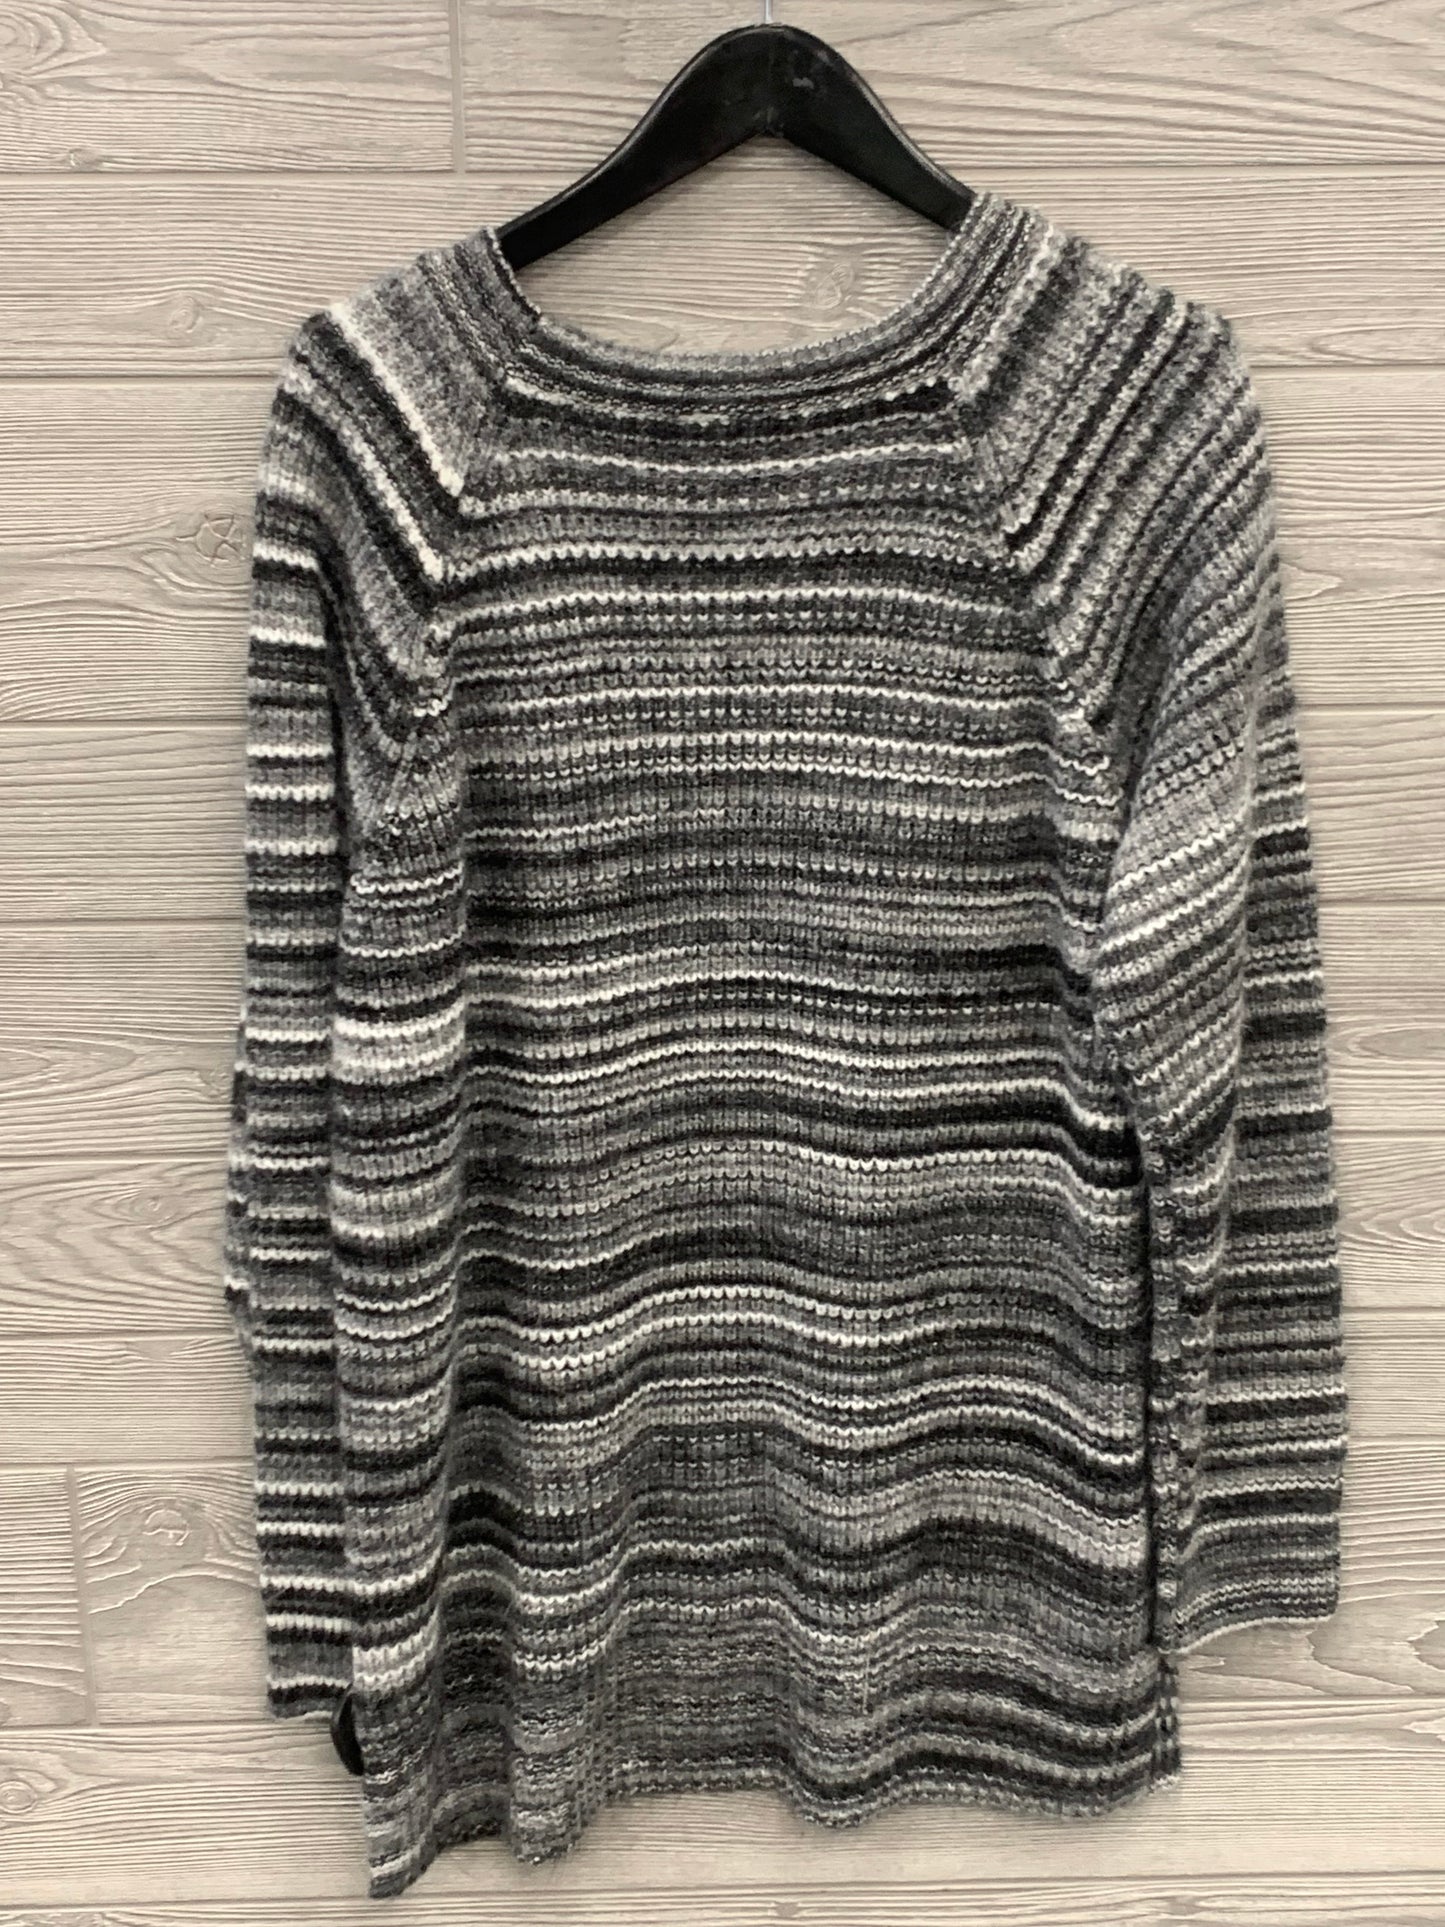 Sweater By Ana  Size: Xxl